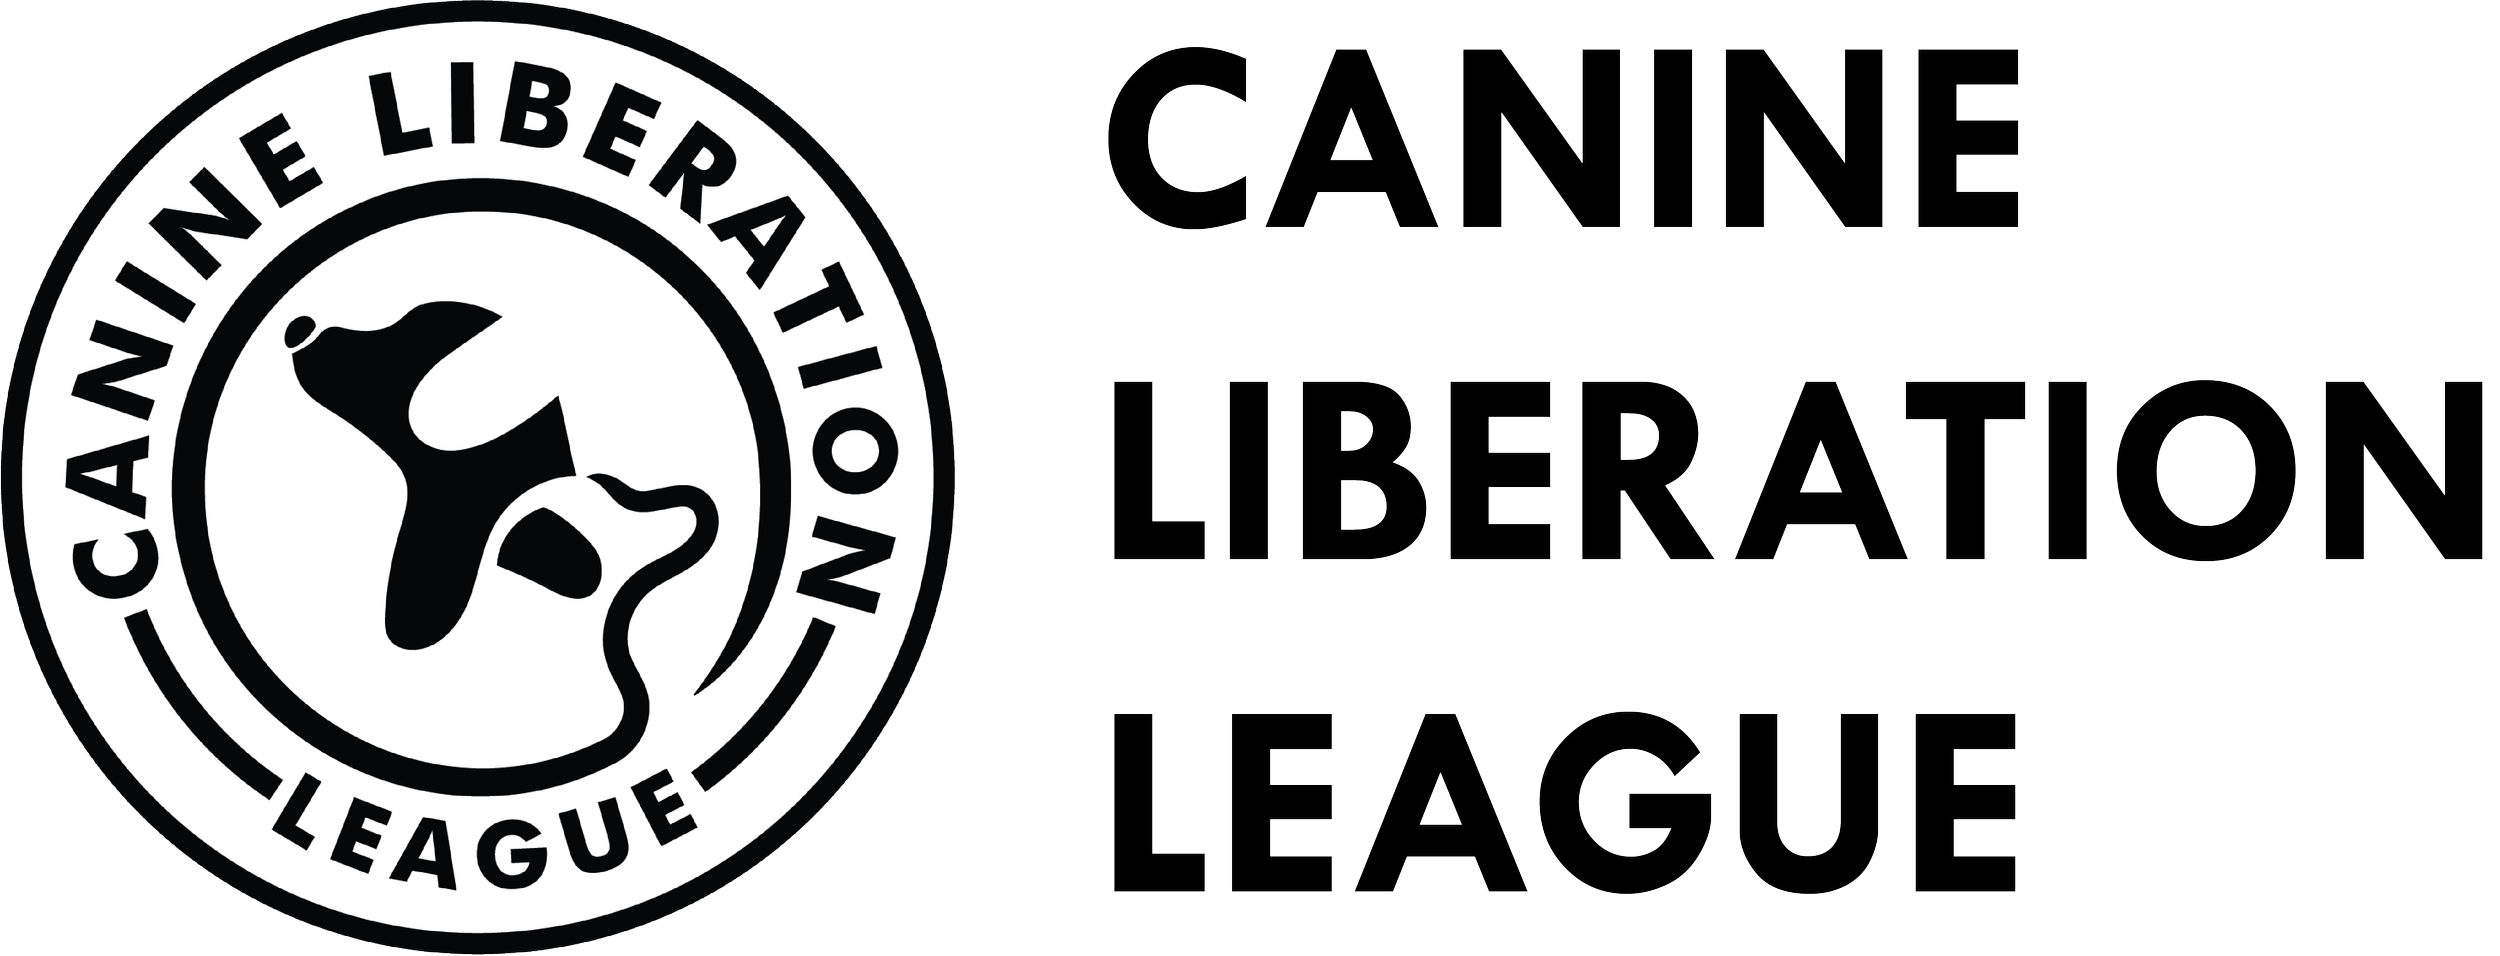 Canine Liberation League